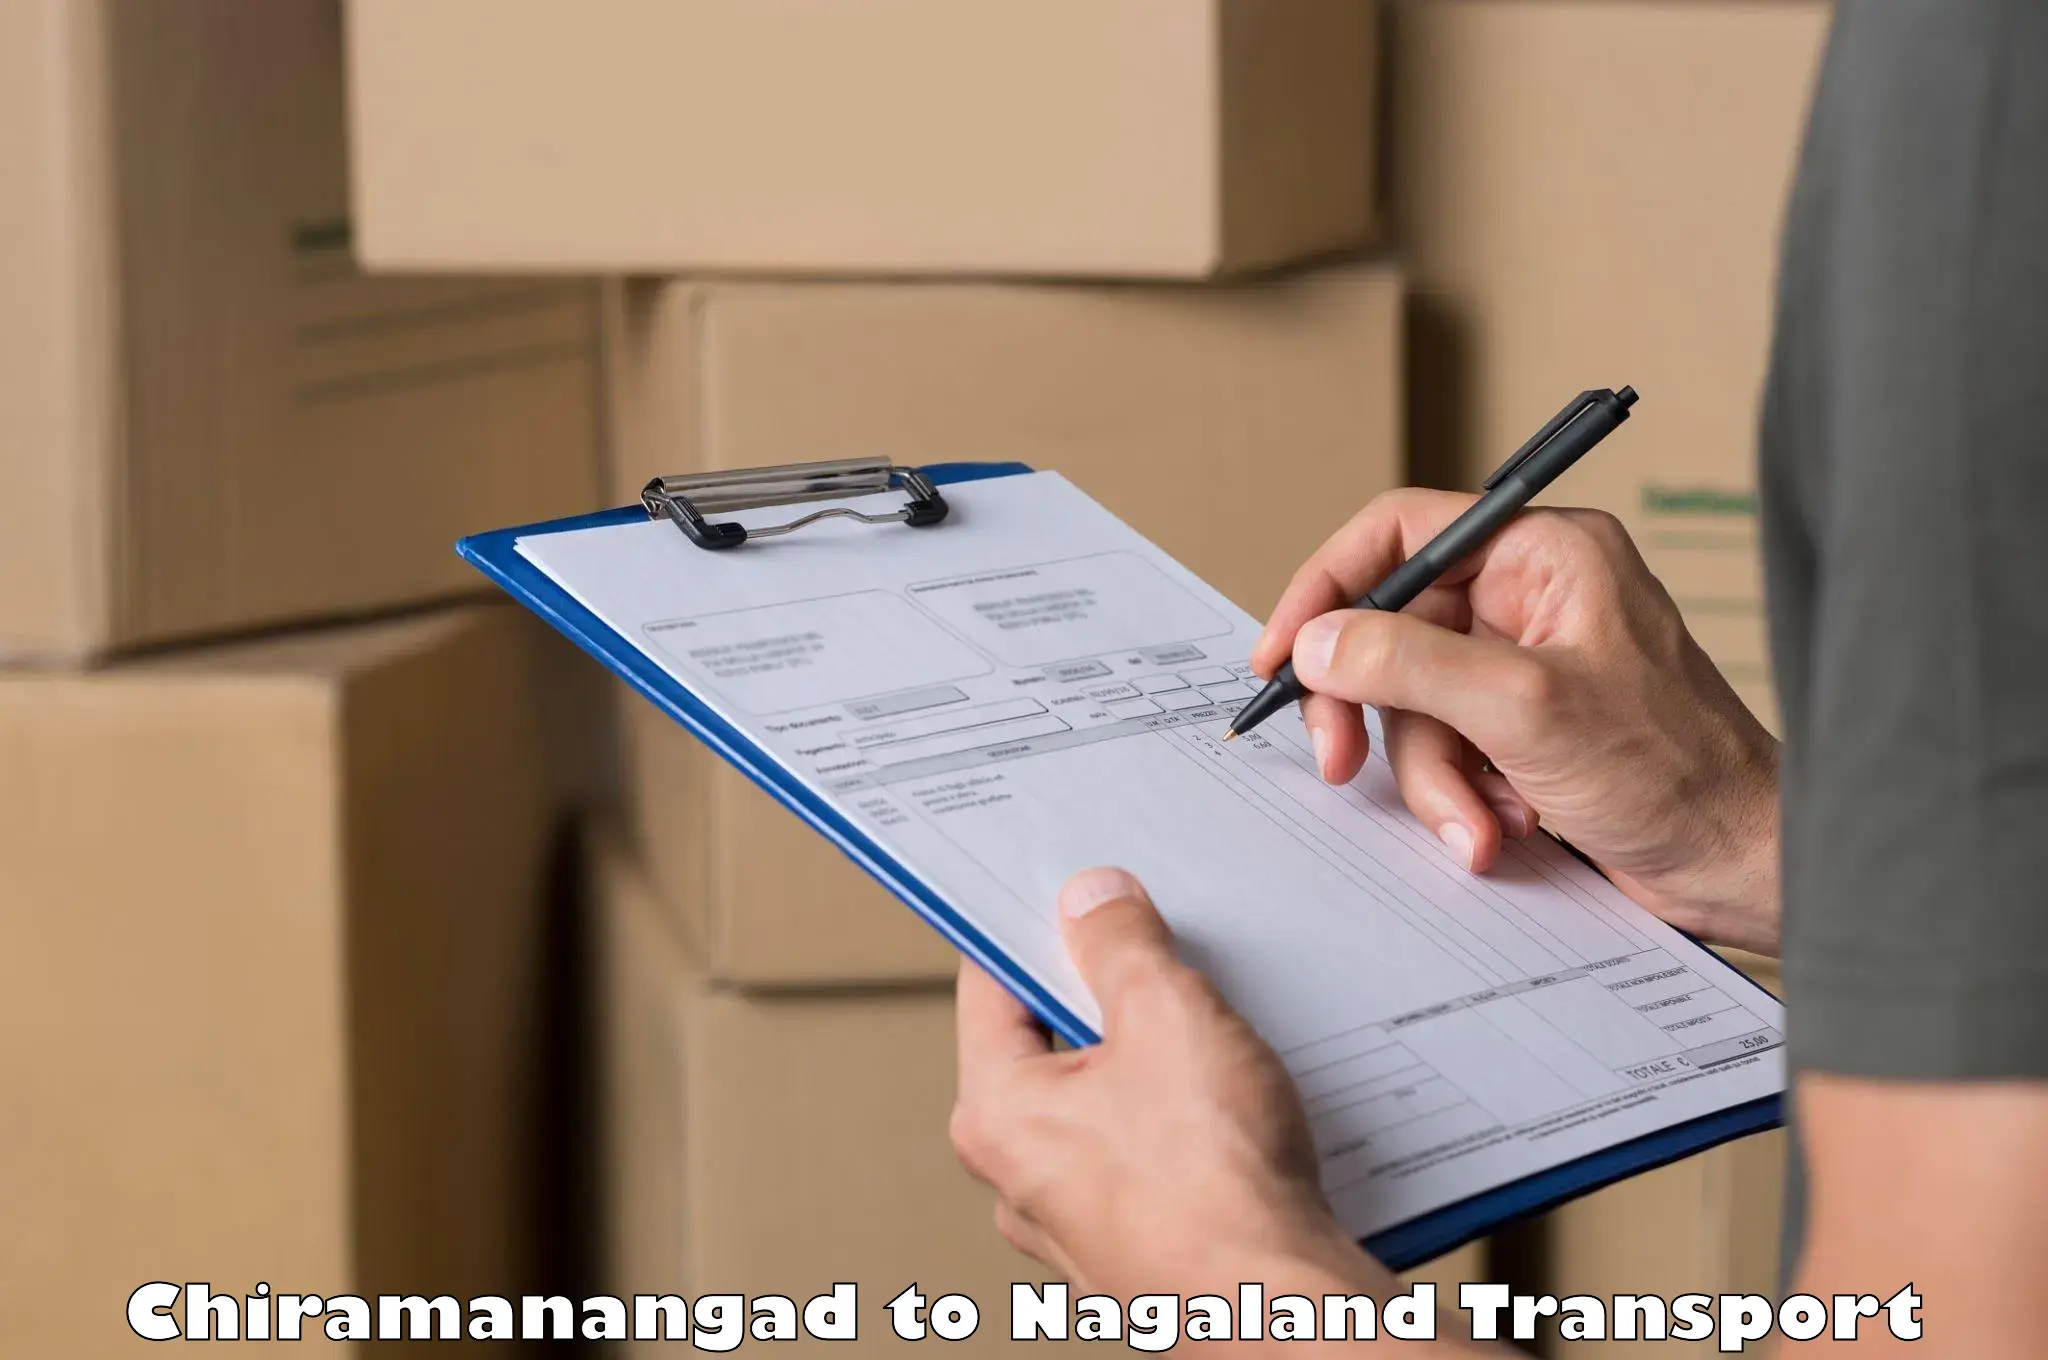 Shipping partner Chiramanangad to Tuensang